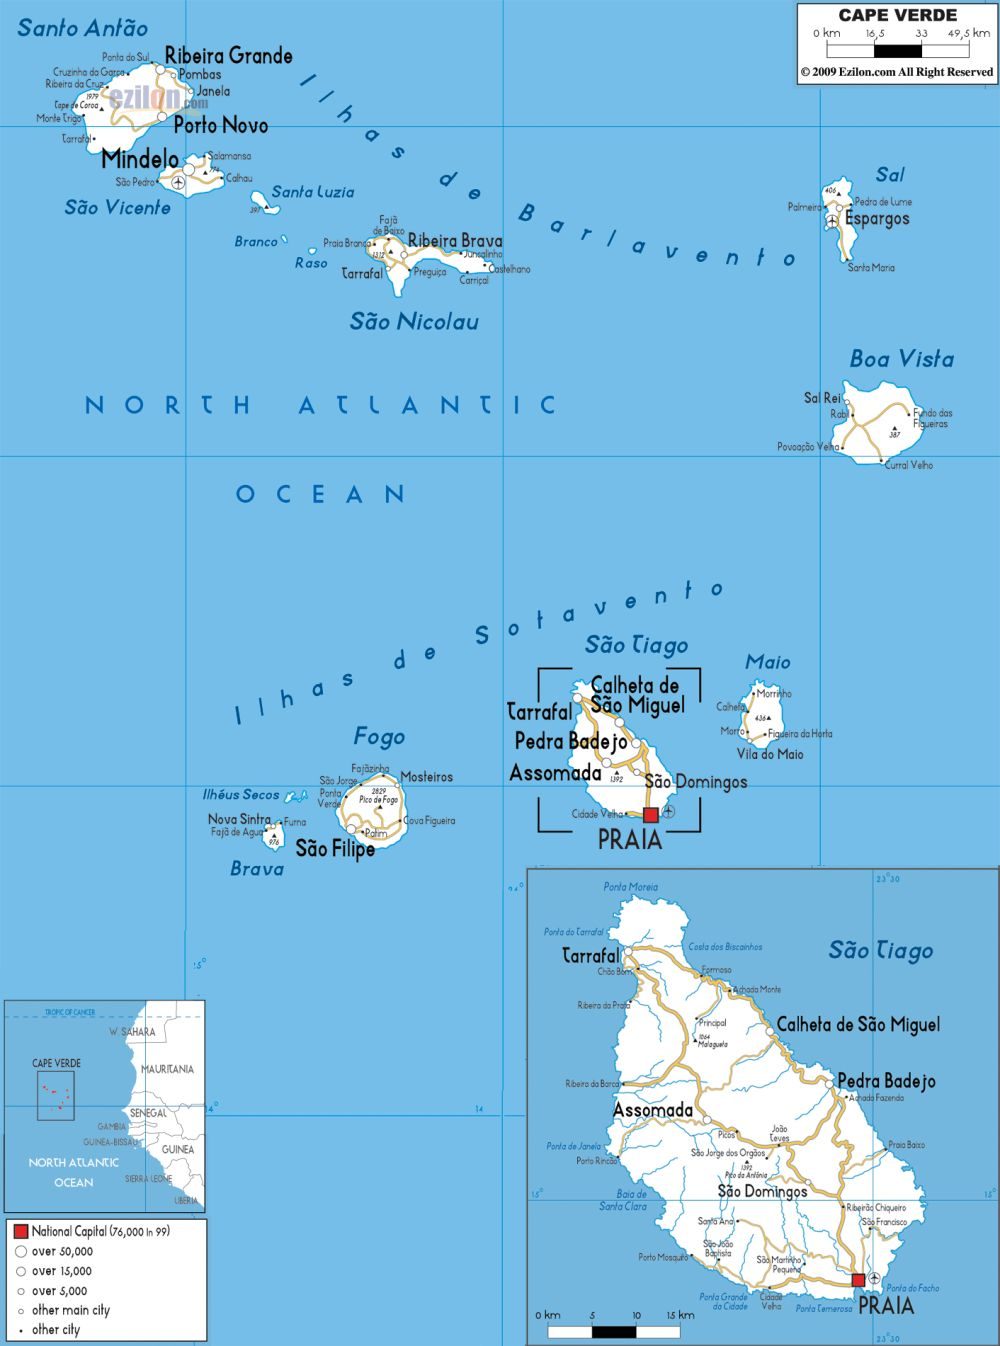 [Update] Bản đồ hành chính đất nước Cabo Verde (Cabo Verde Map) phóng to năm 2022 18